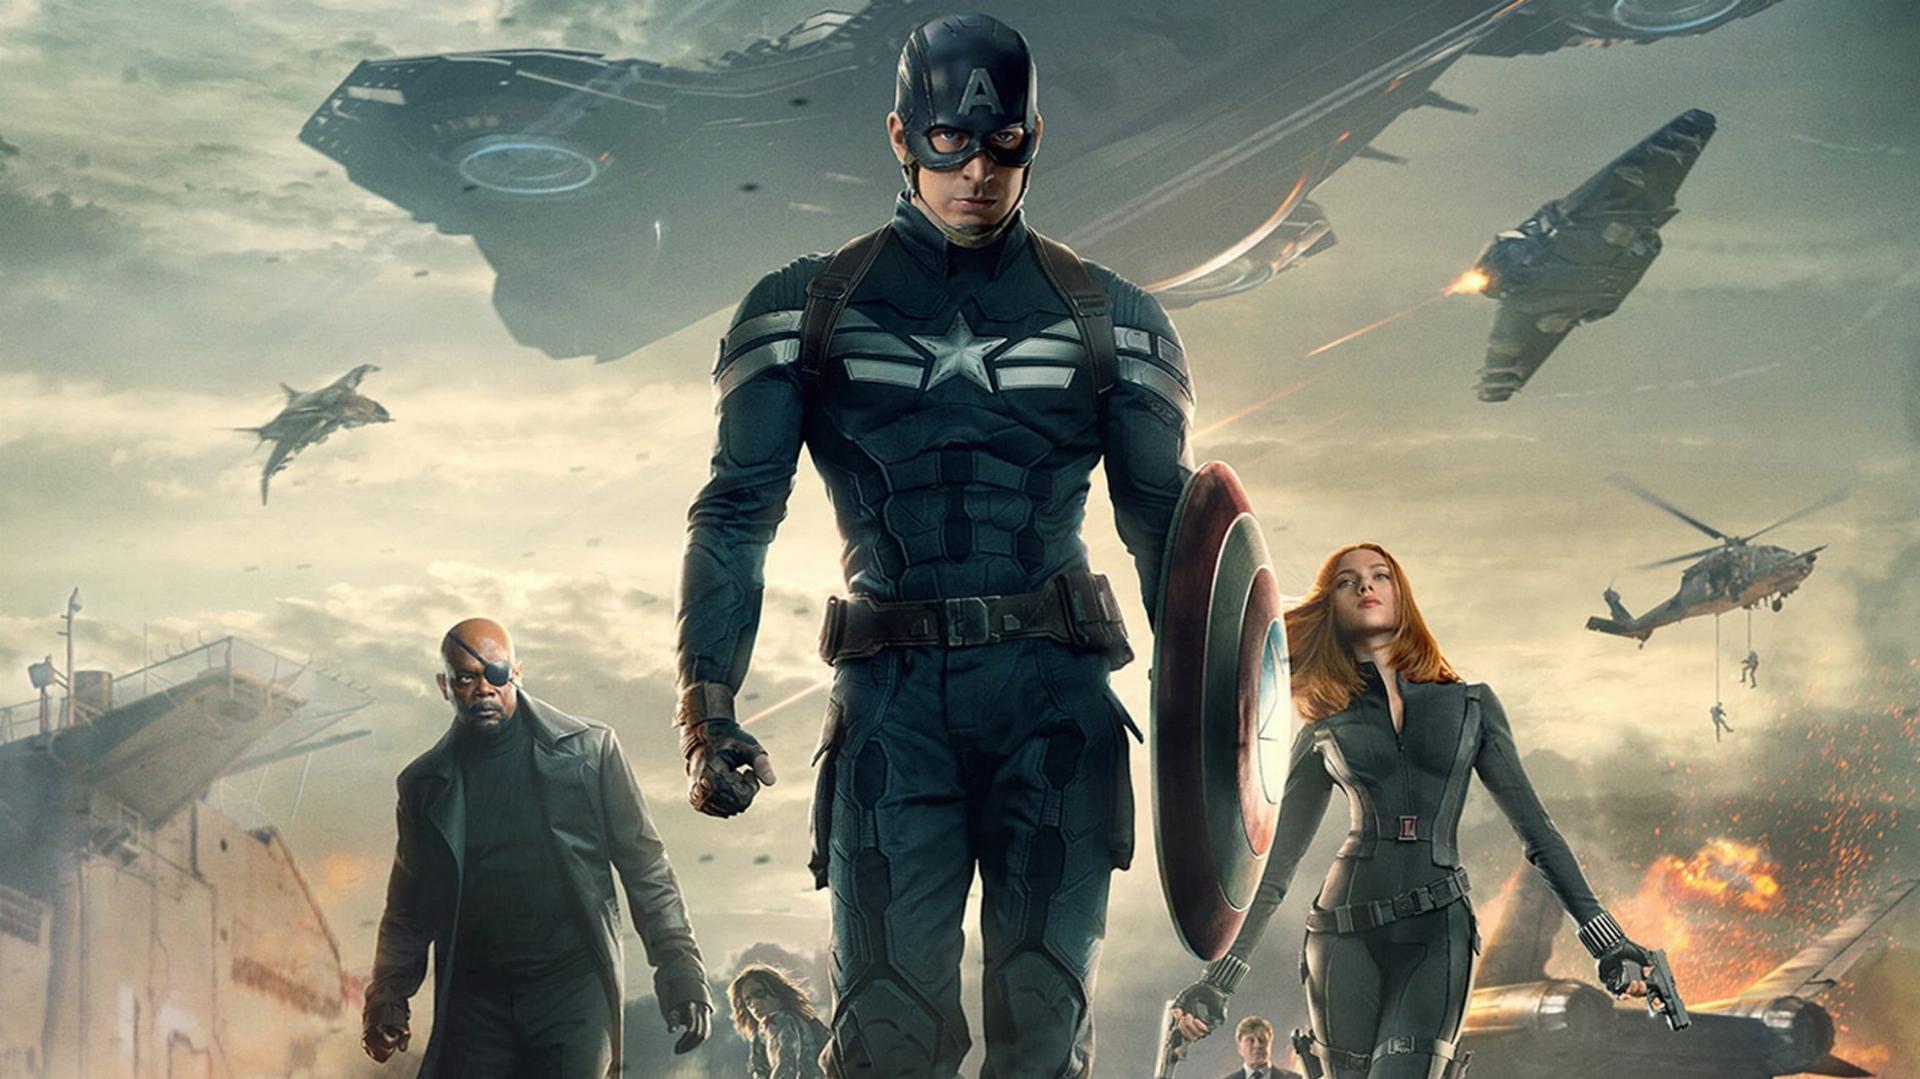 კაპიტანი ამერიკა: ზამთრის ჯარისკაცი / Captain America: The Winter Soldier